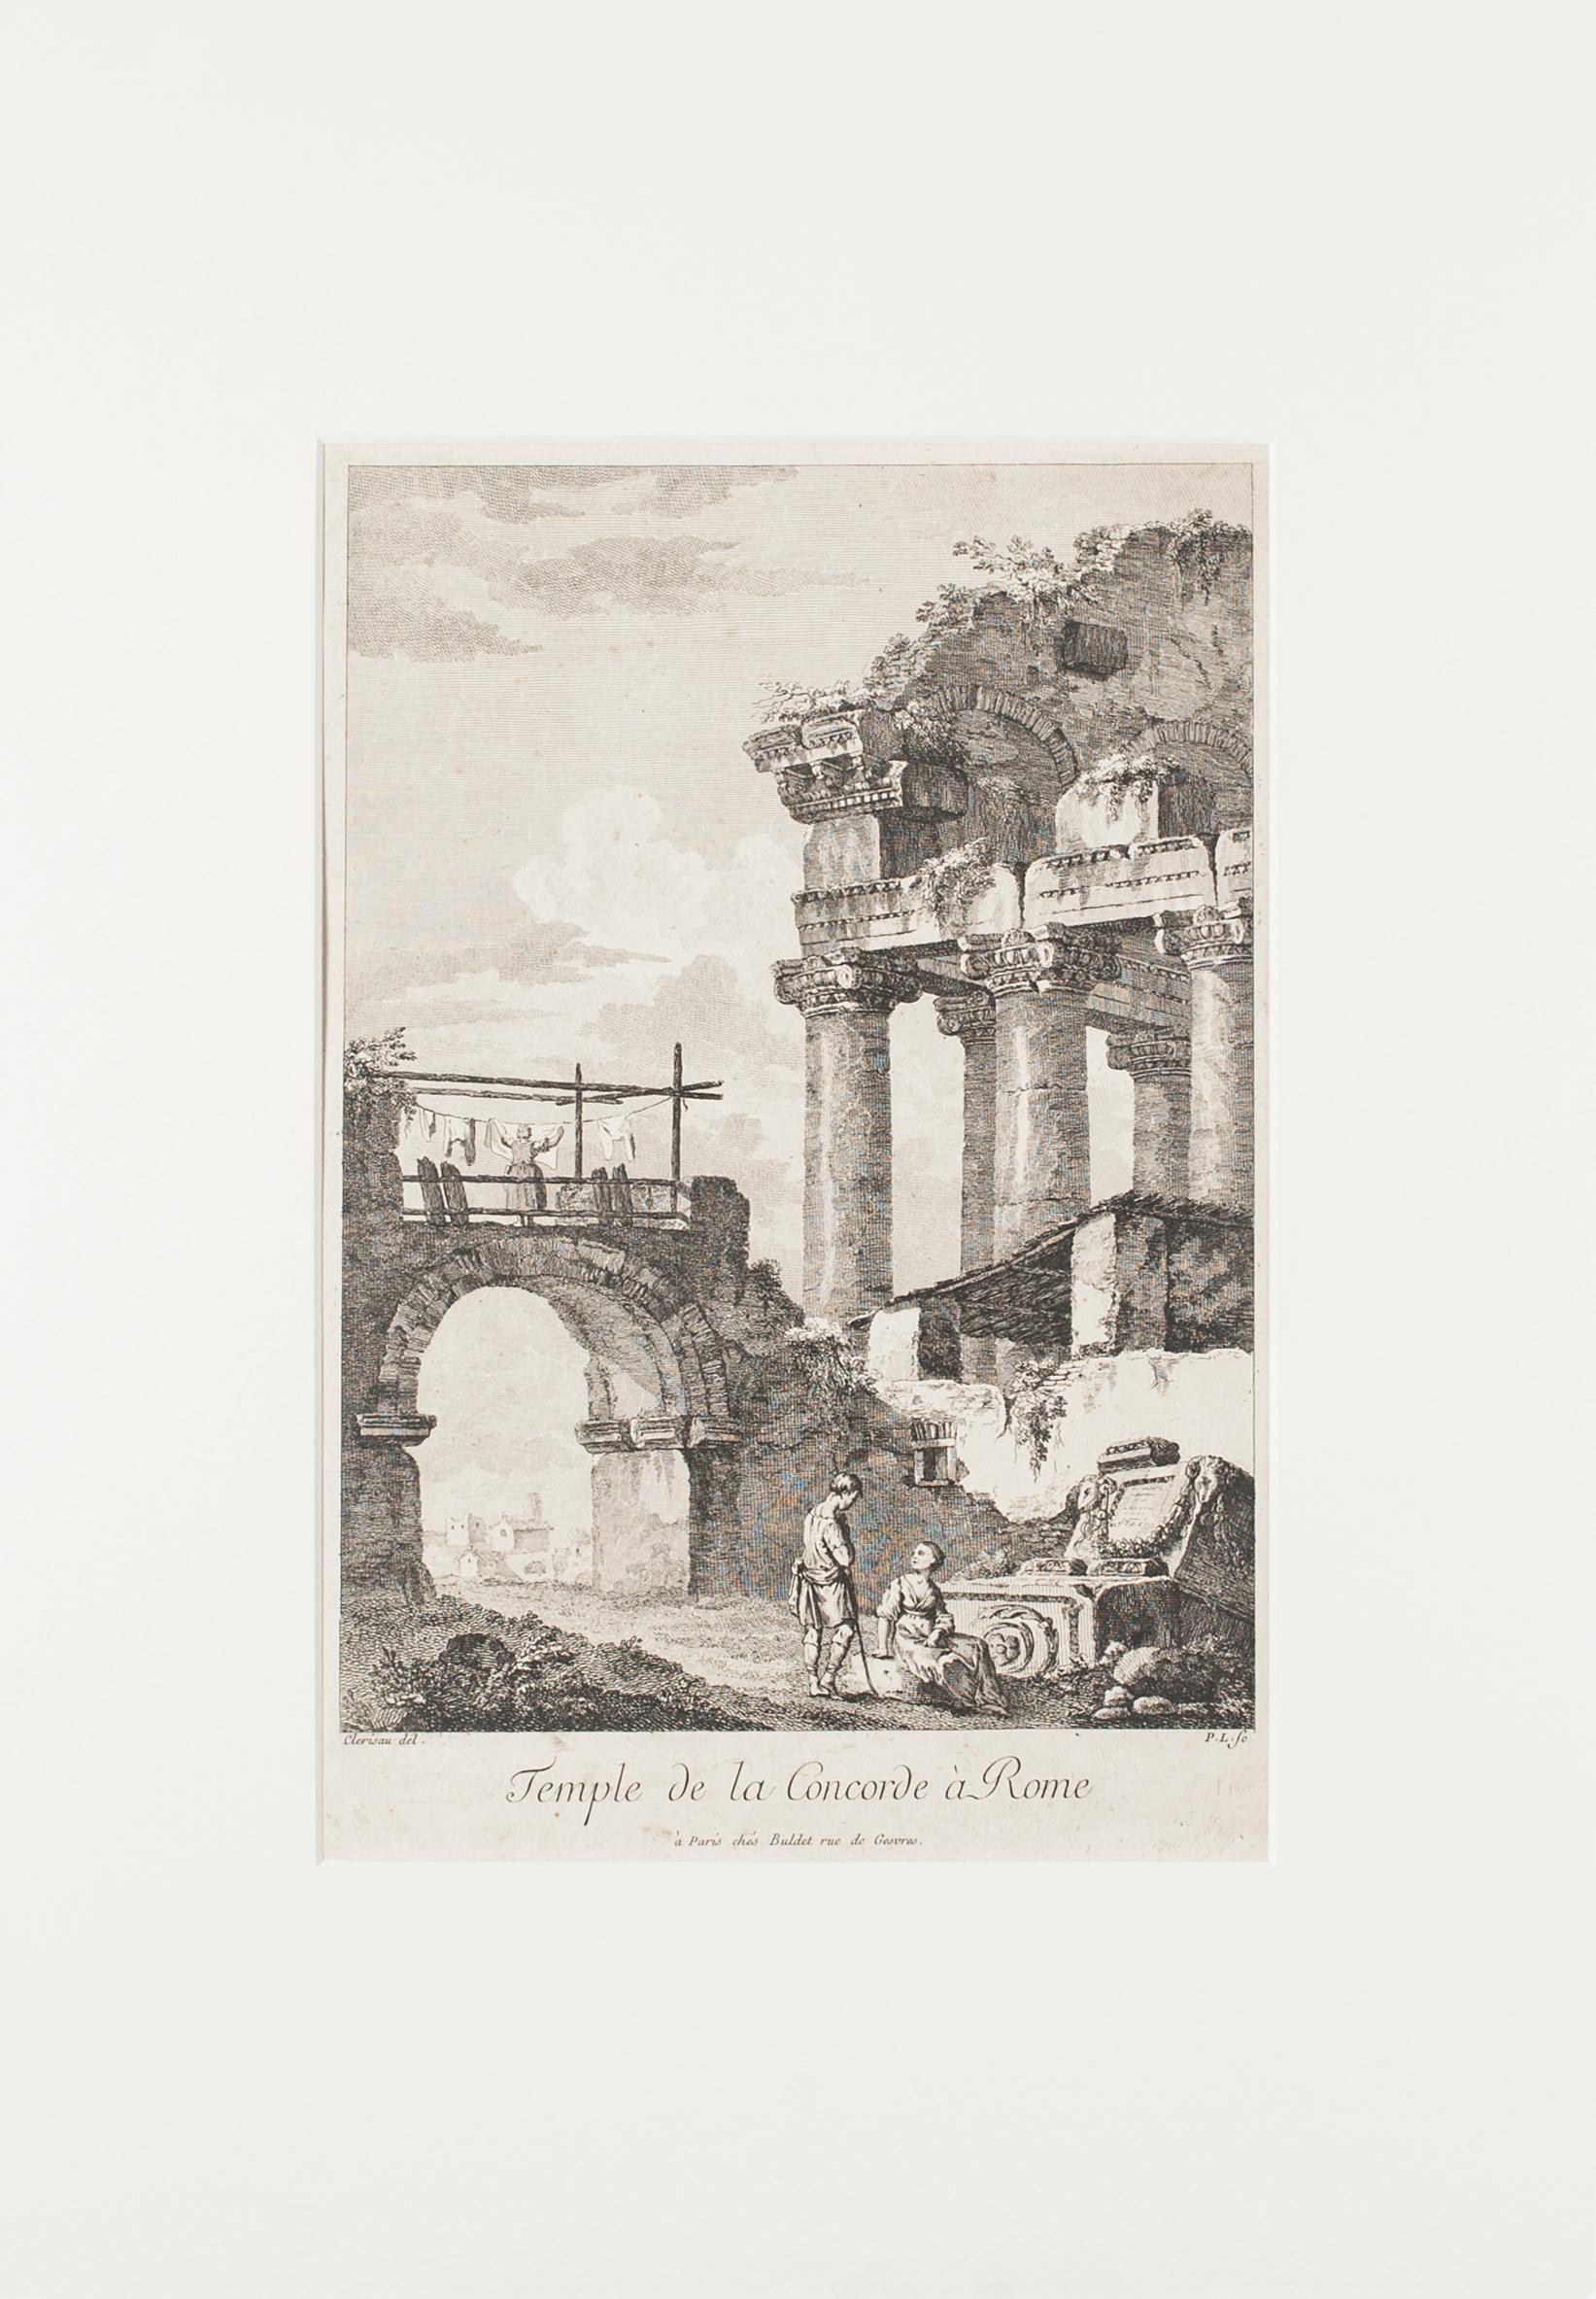 Temple de la Concorde, Rome - Etching by C.-L. Clérisseau - Early 1800 - Print by Charles-Louis Clérisseau